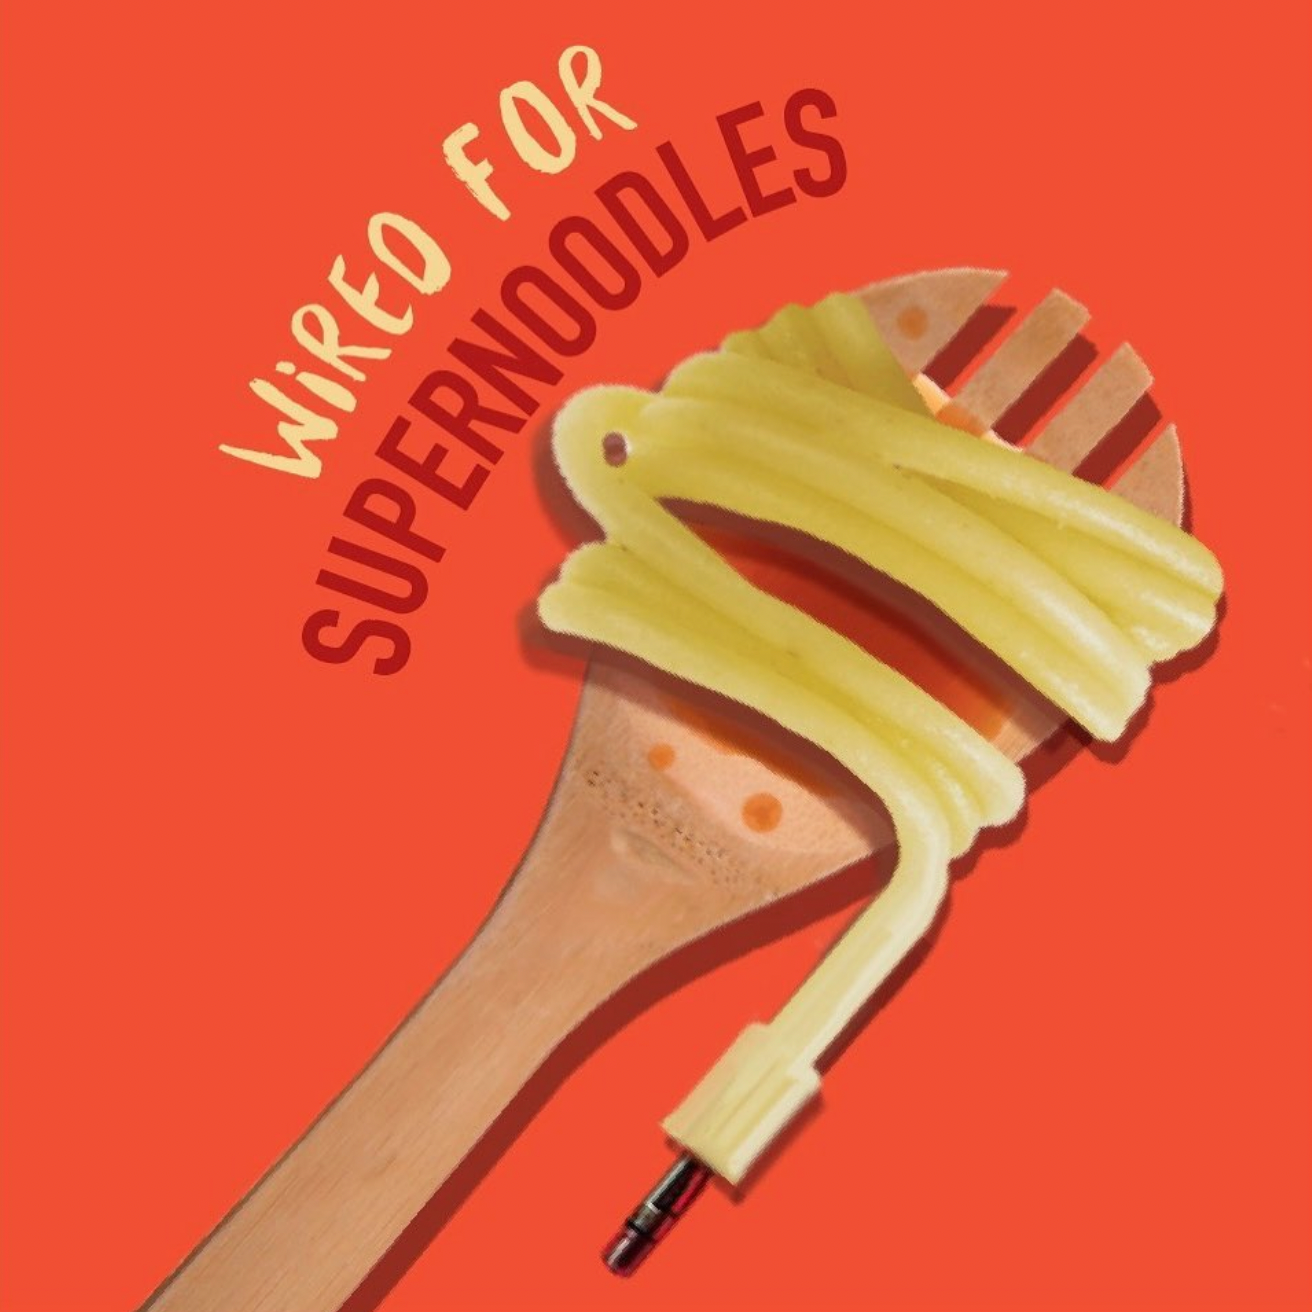 Super Noodles- Variety Pack